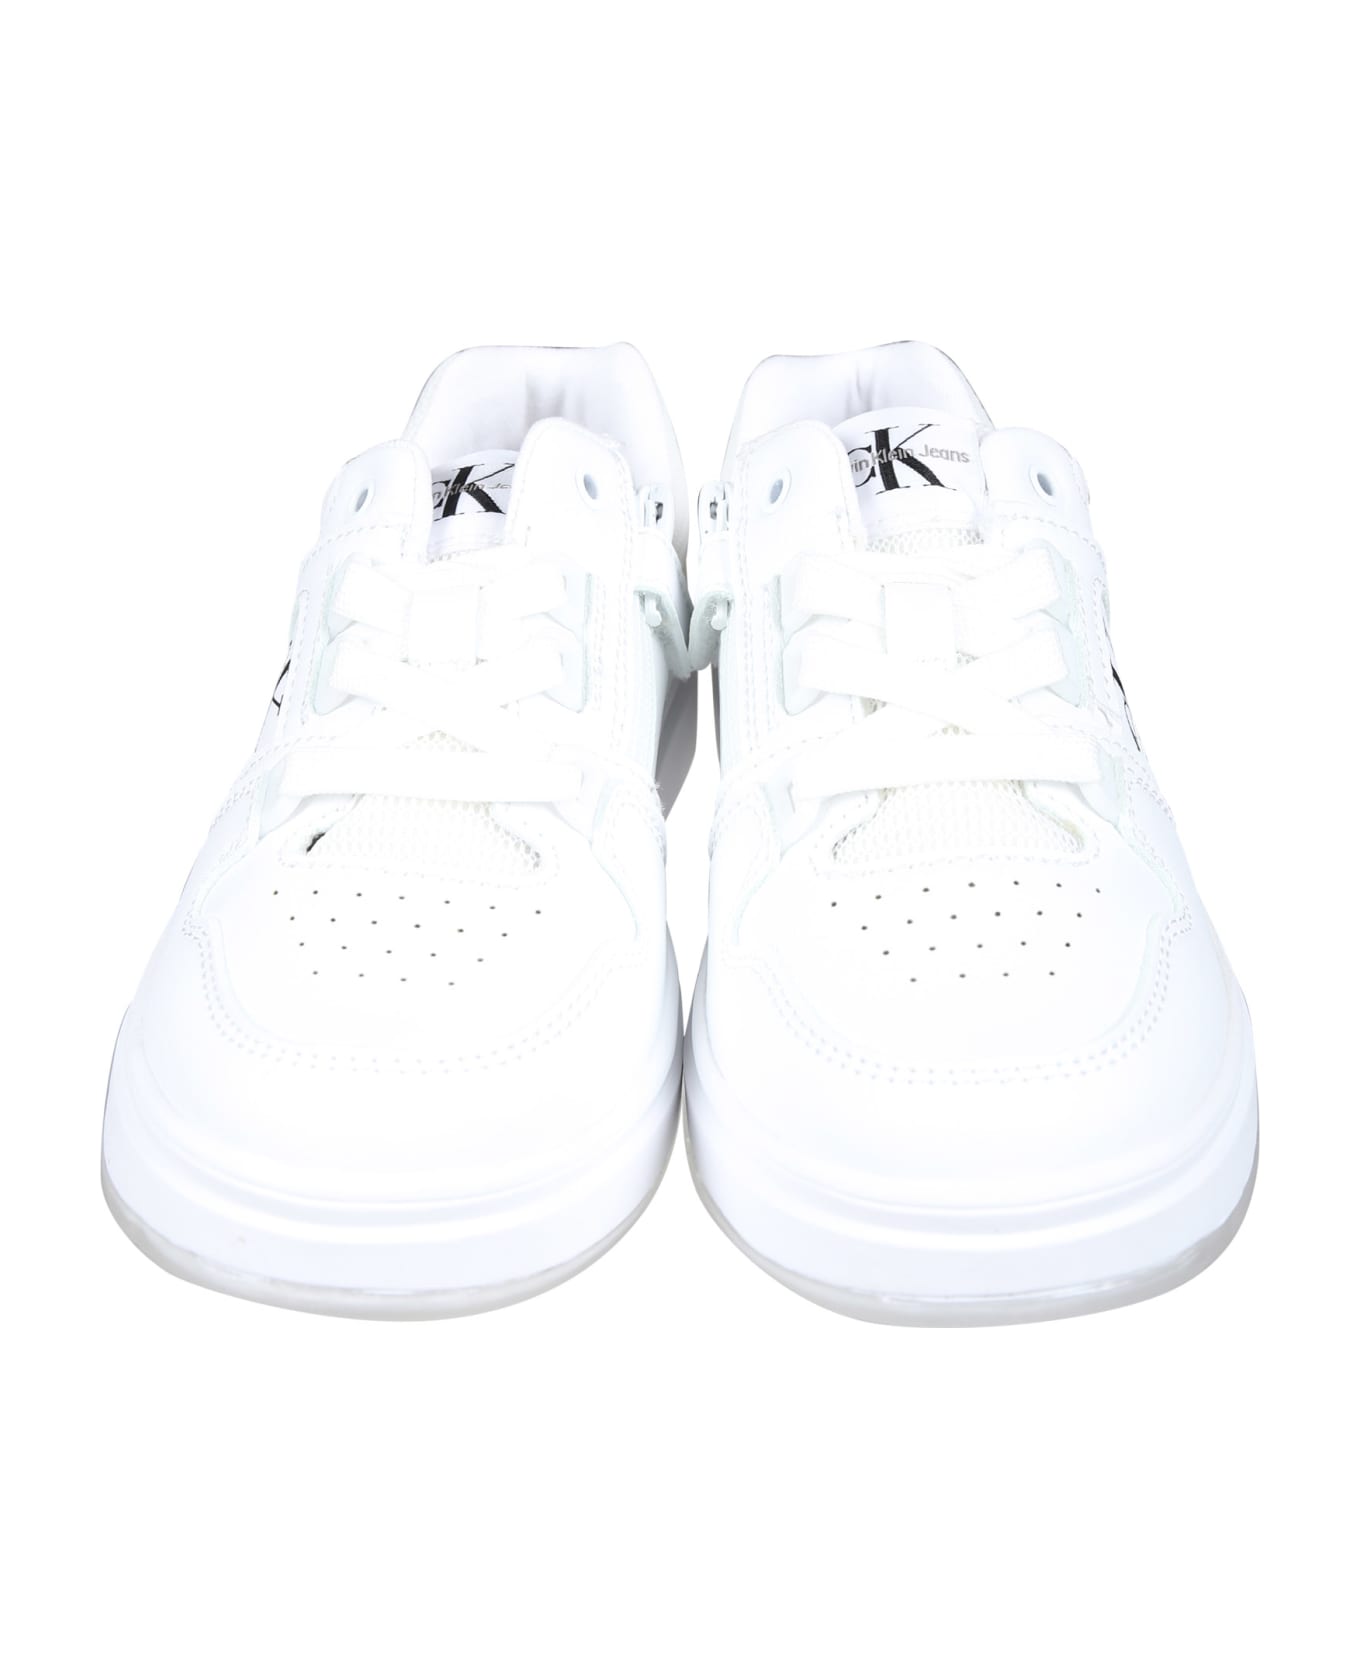 Calvin Klein White Sneakers For Kids With Logo - White シューズ